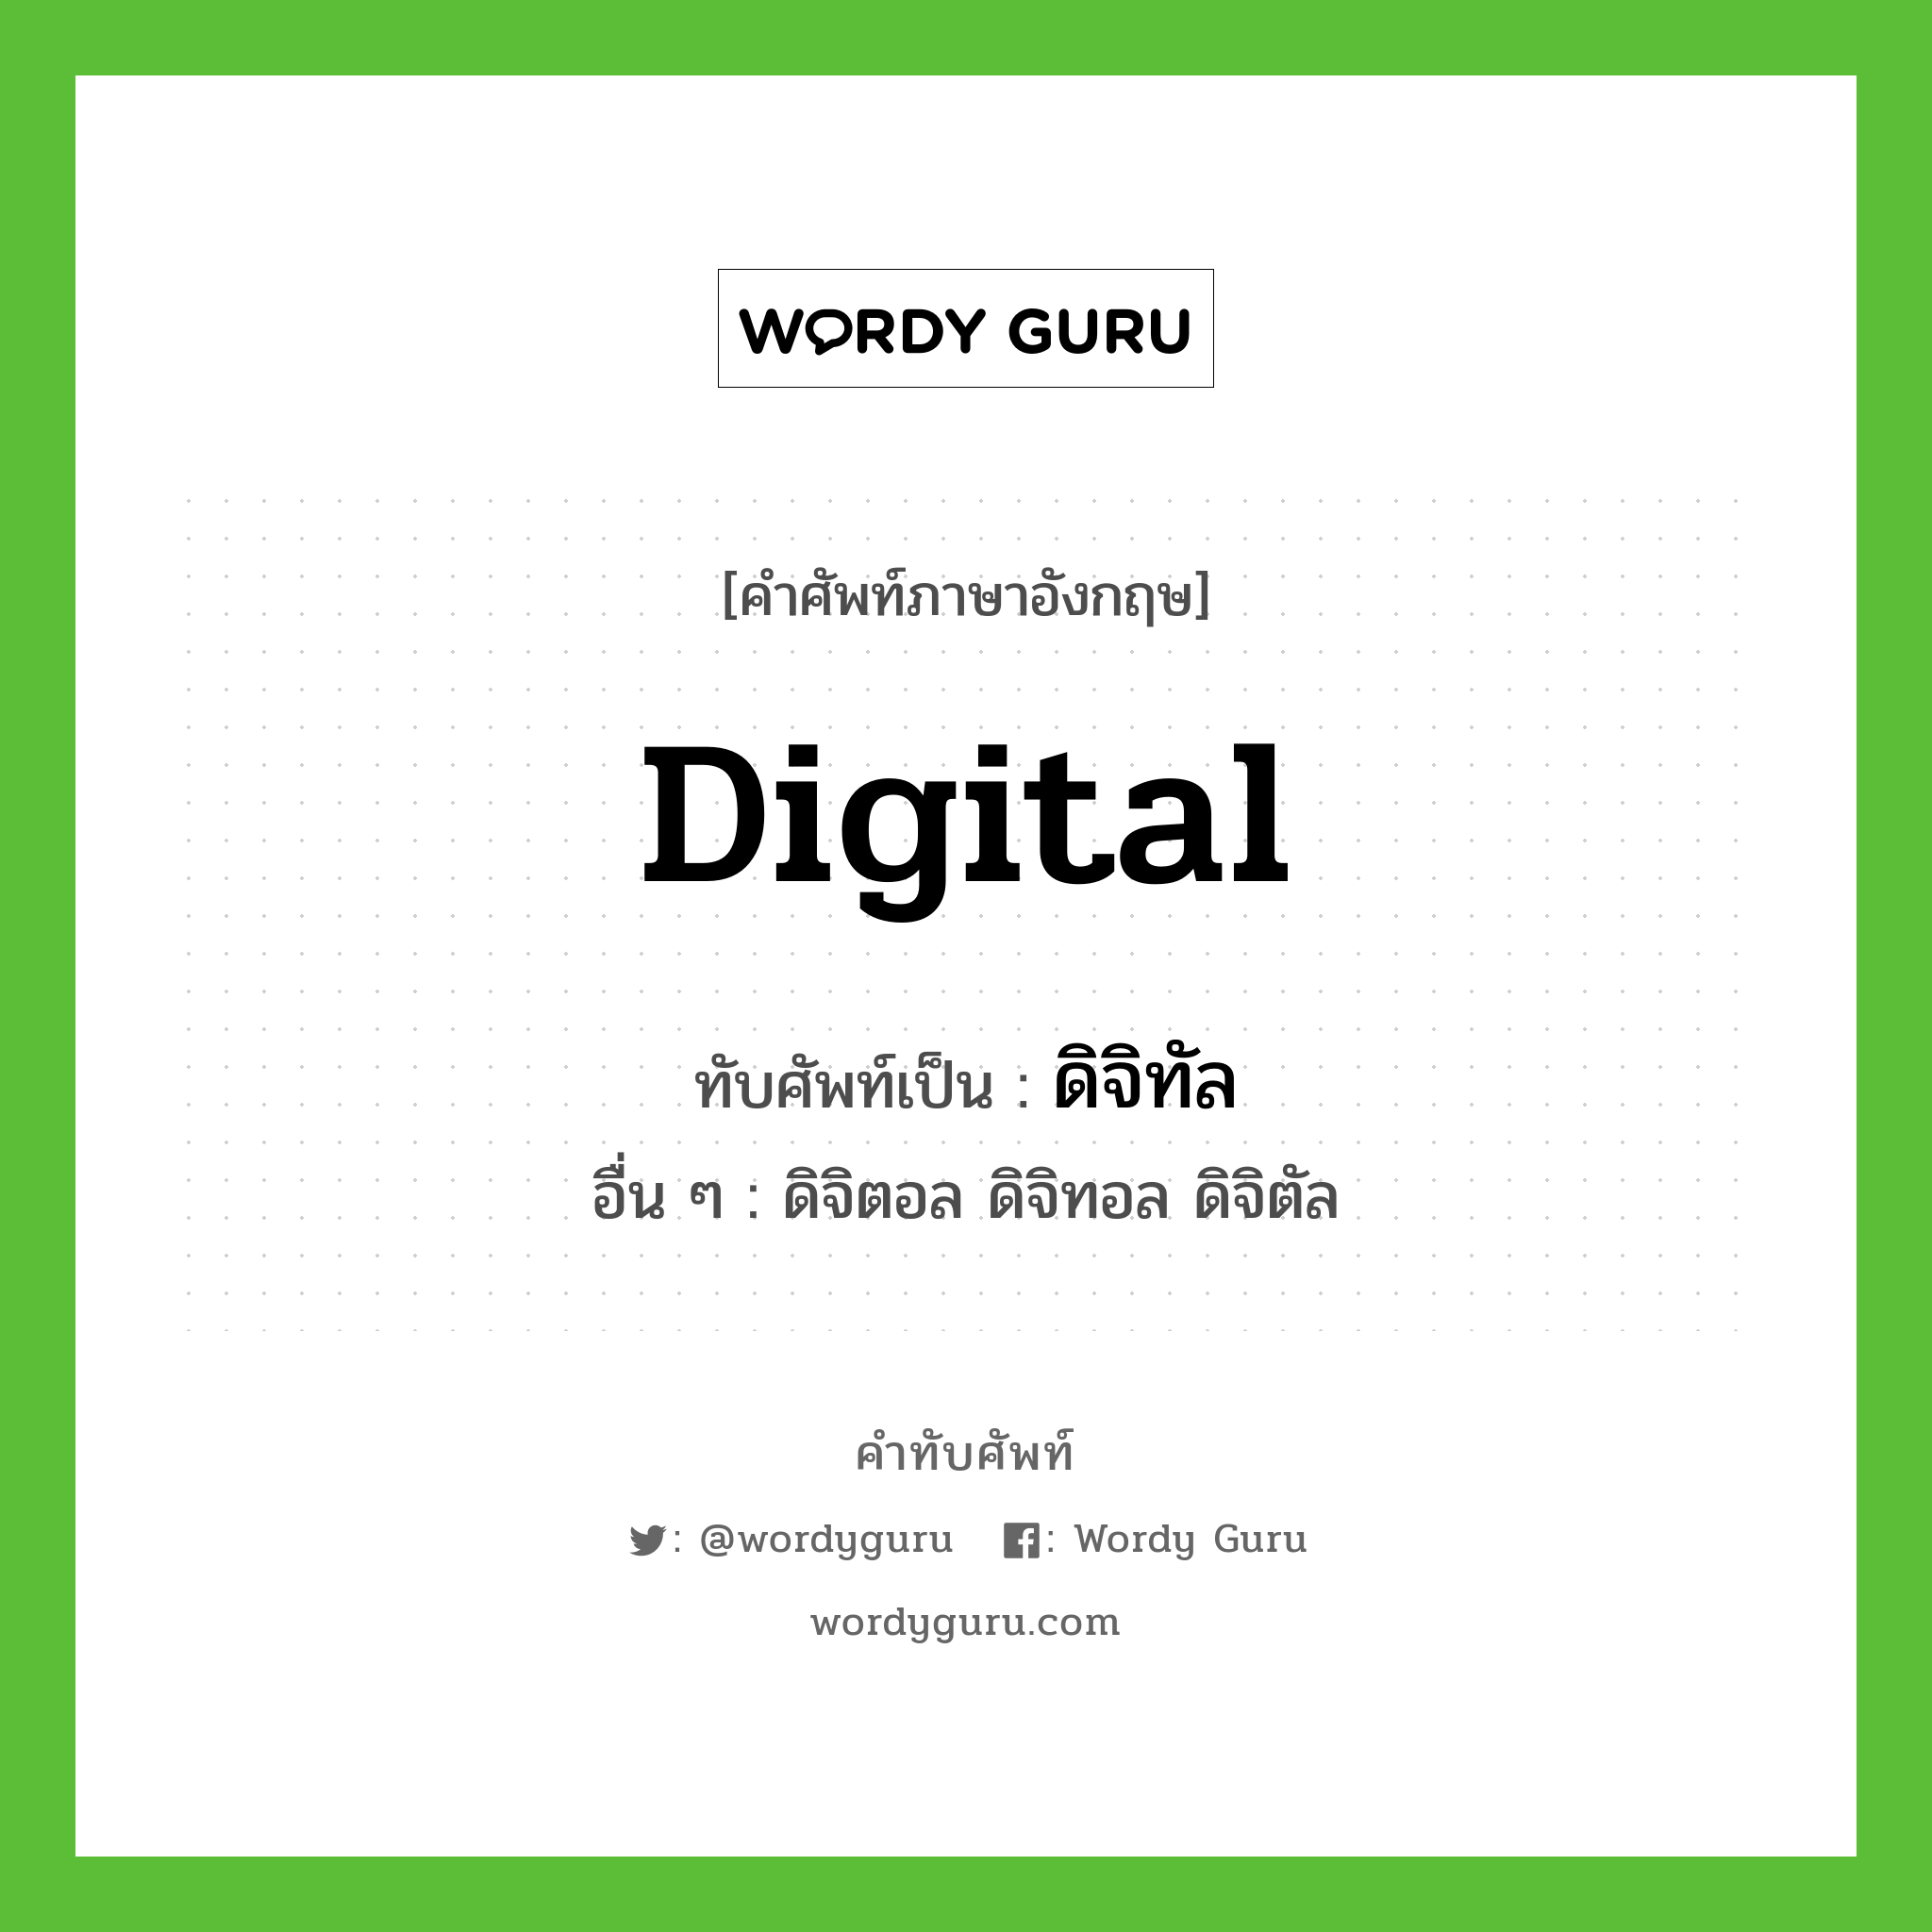 digital เขียนเป็นคำไทยว่าอะไร?, คำศัพท์ภาษาอังกฤษ digital ทับศัพท์เป็น ดิจิทัล อื่น ๆ ดิจิตอล ดิจิทอล ดิจิตัล